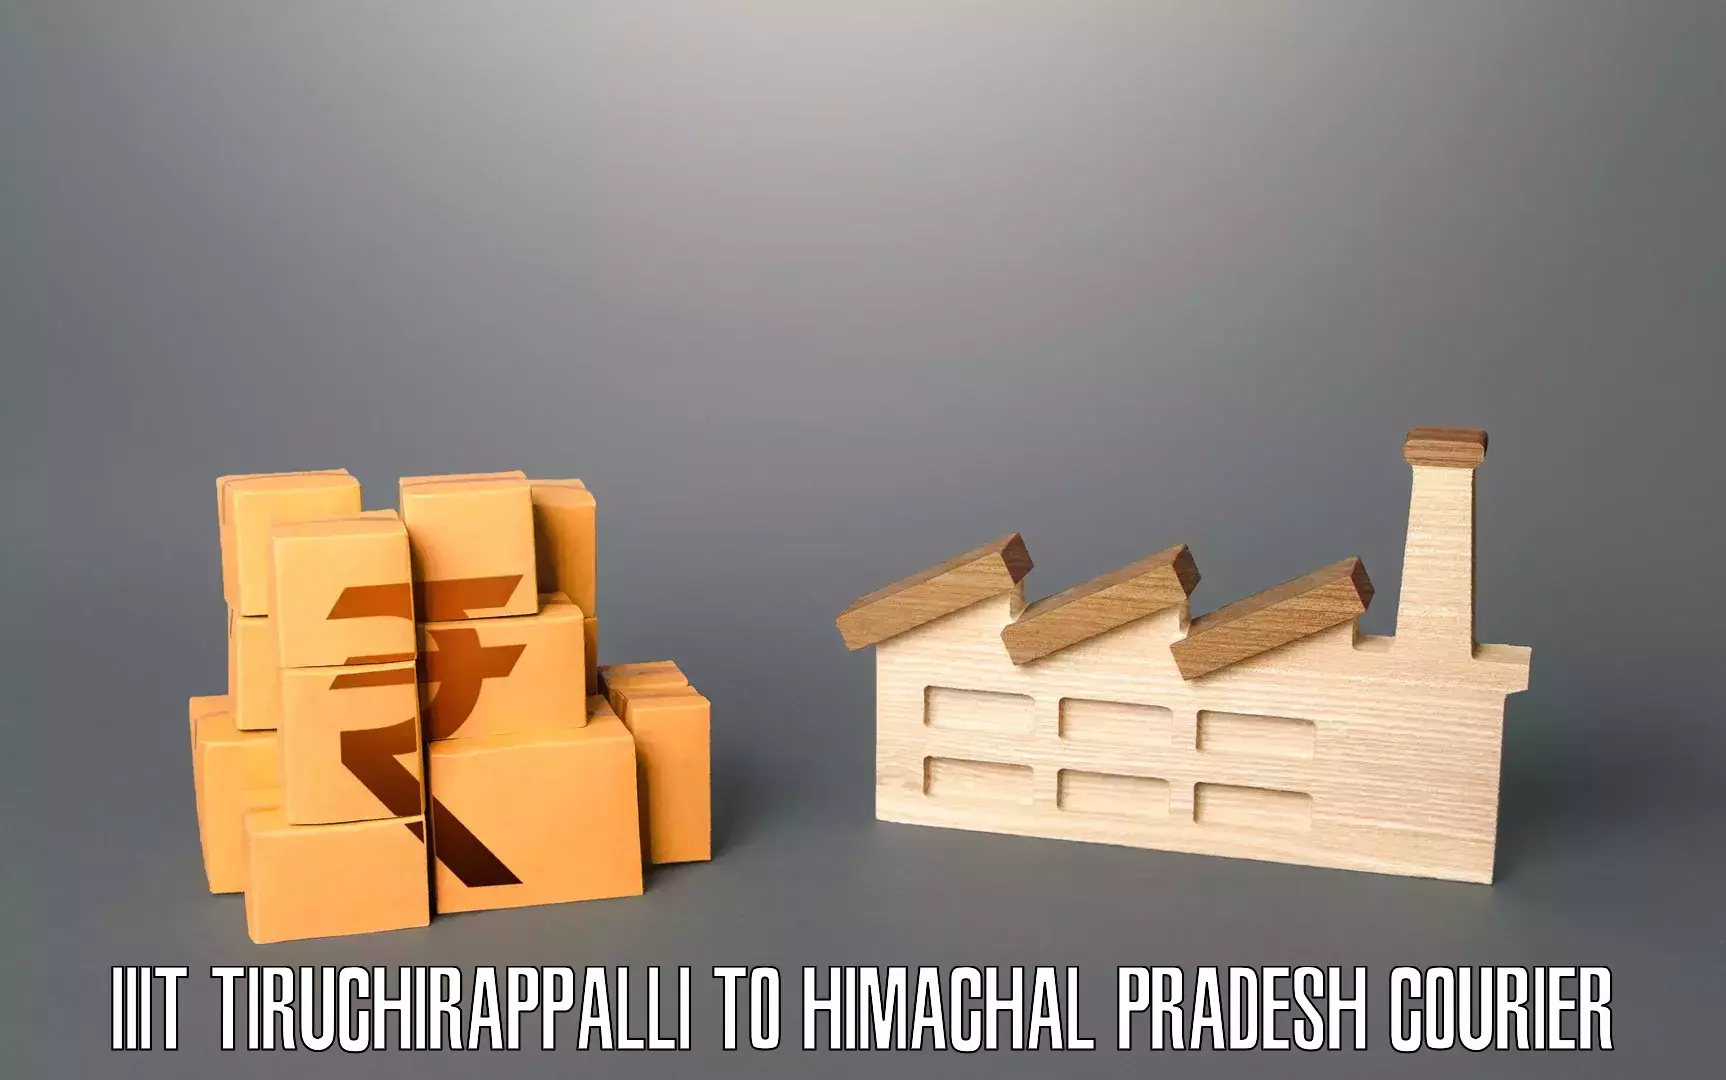 Professional relocation services in IIIT Tiruchirappalli to Bilaspur Himachal Pradesh